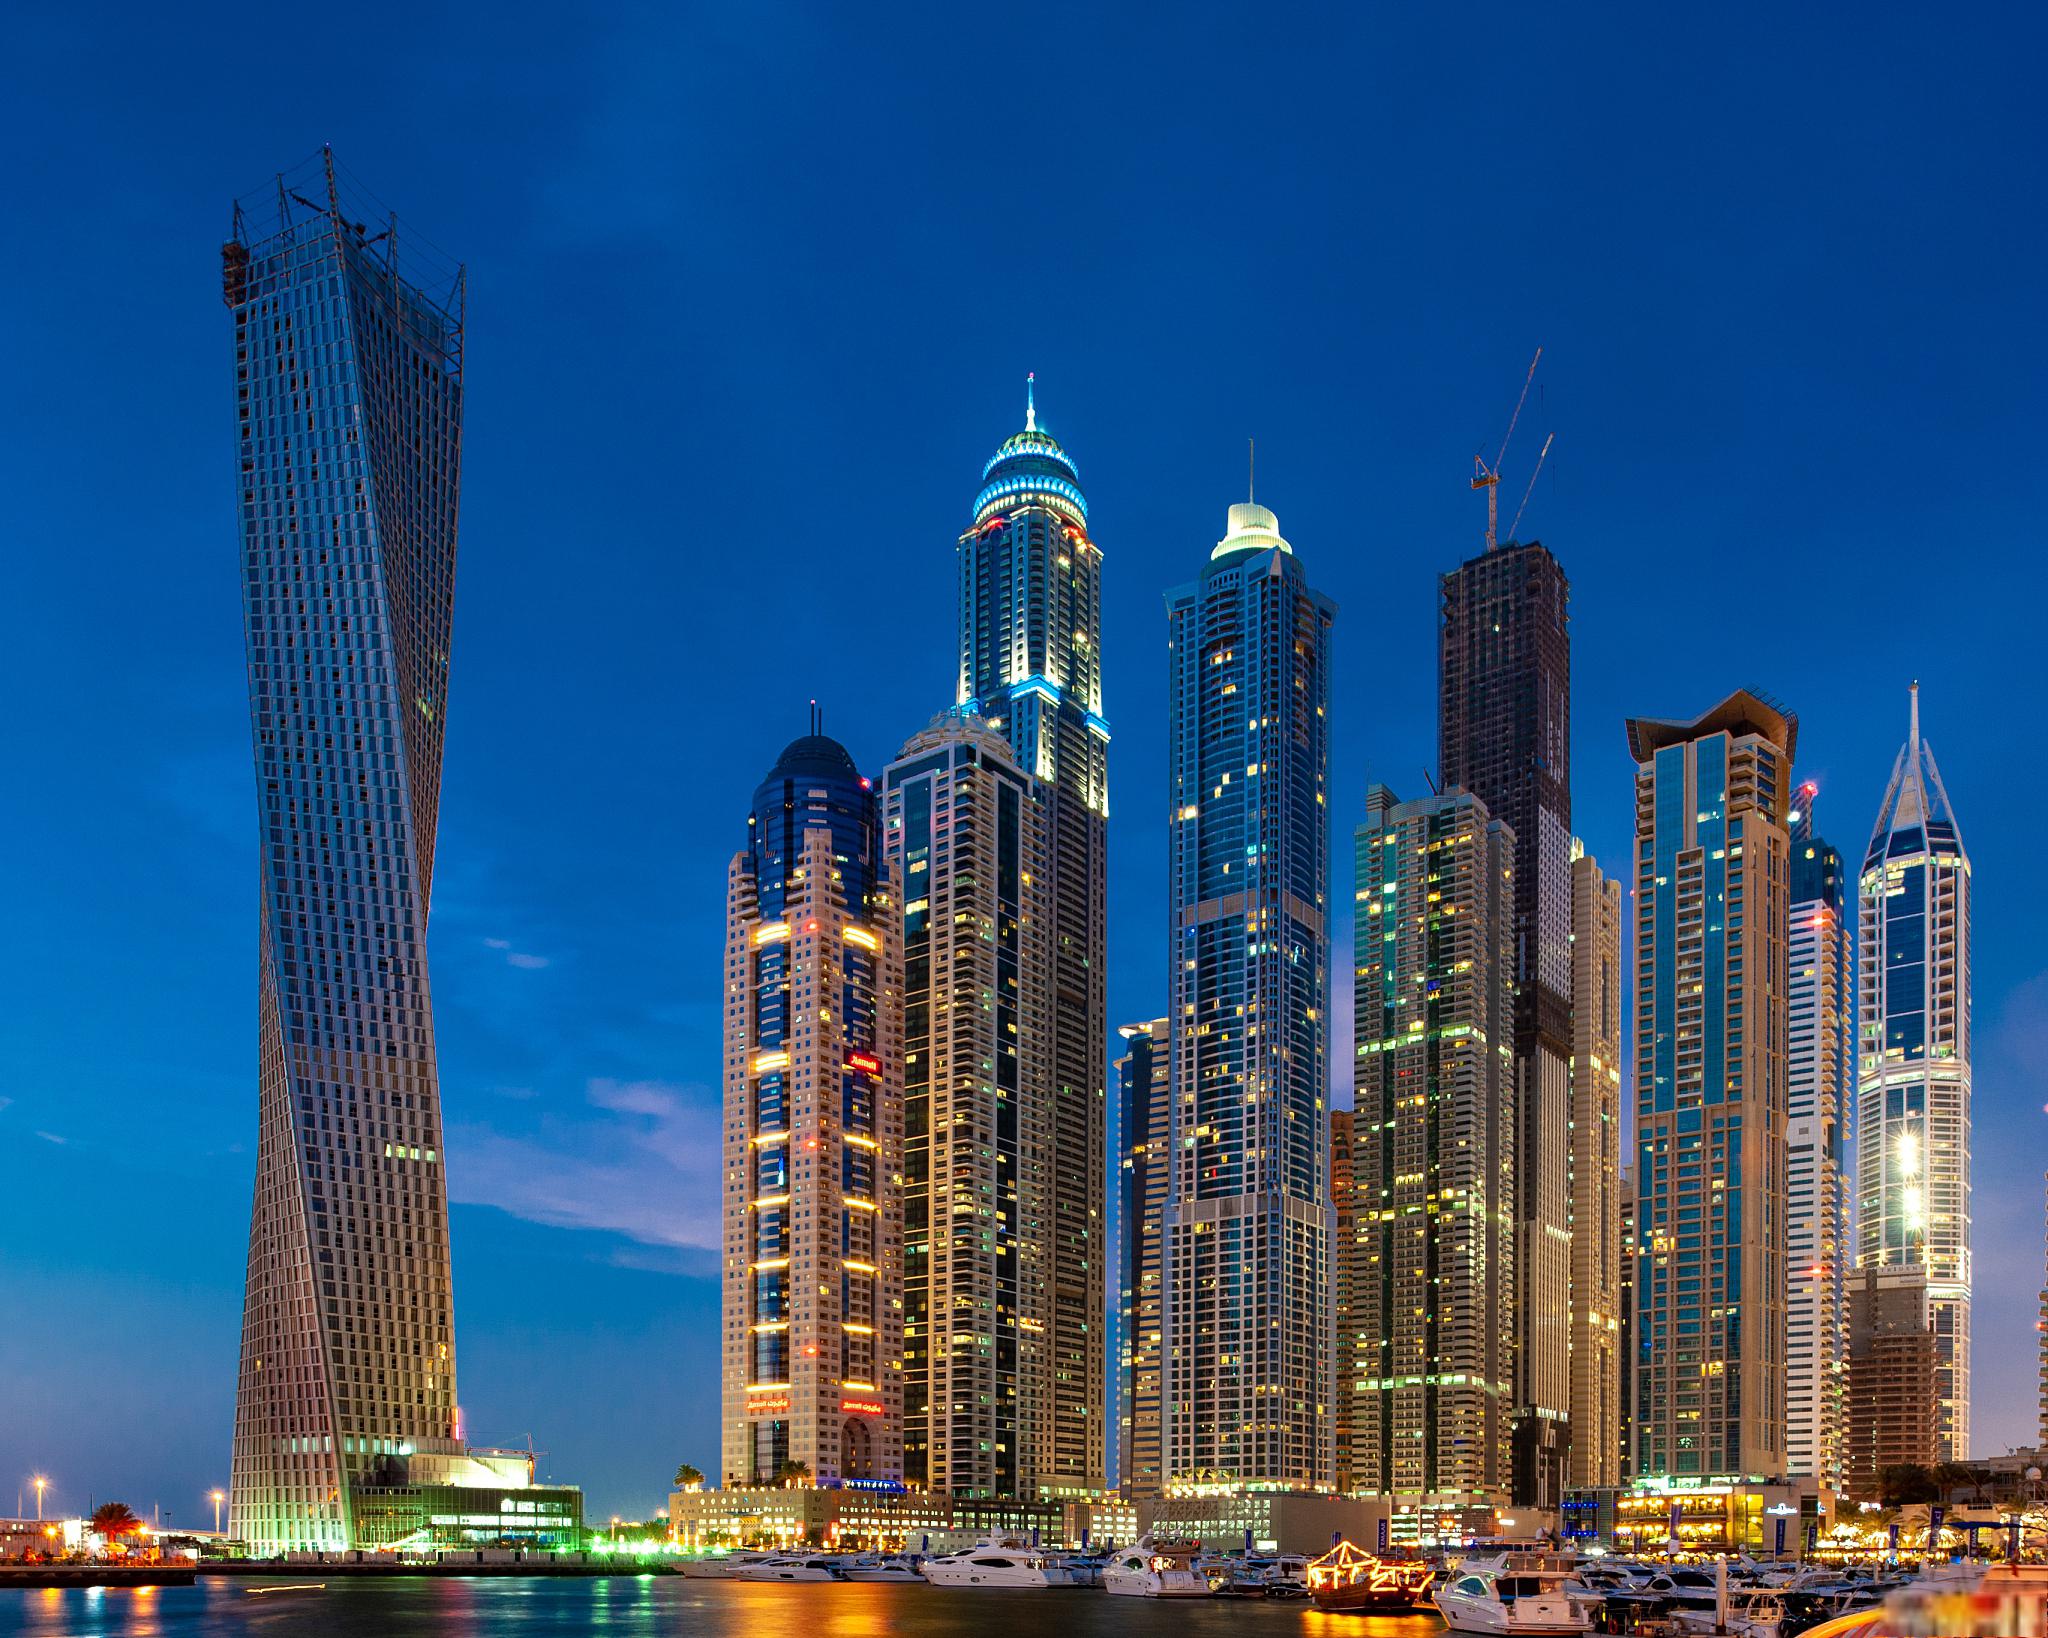 迪拜,这座城市的独特魅力 迪拜,这座阿联酋的第二大城市,位于阿拉伯